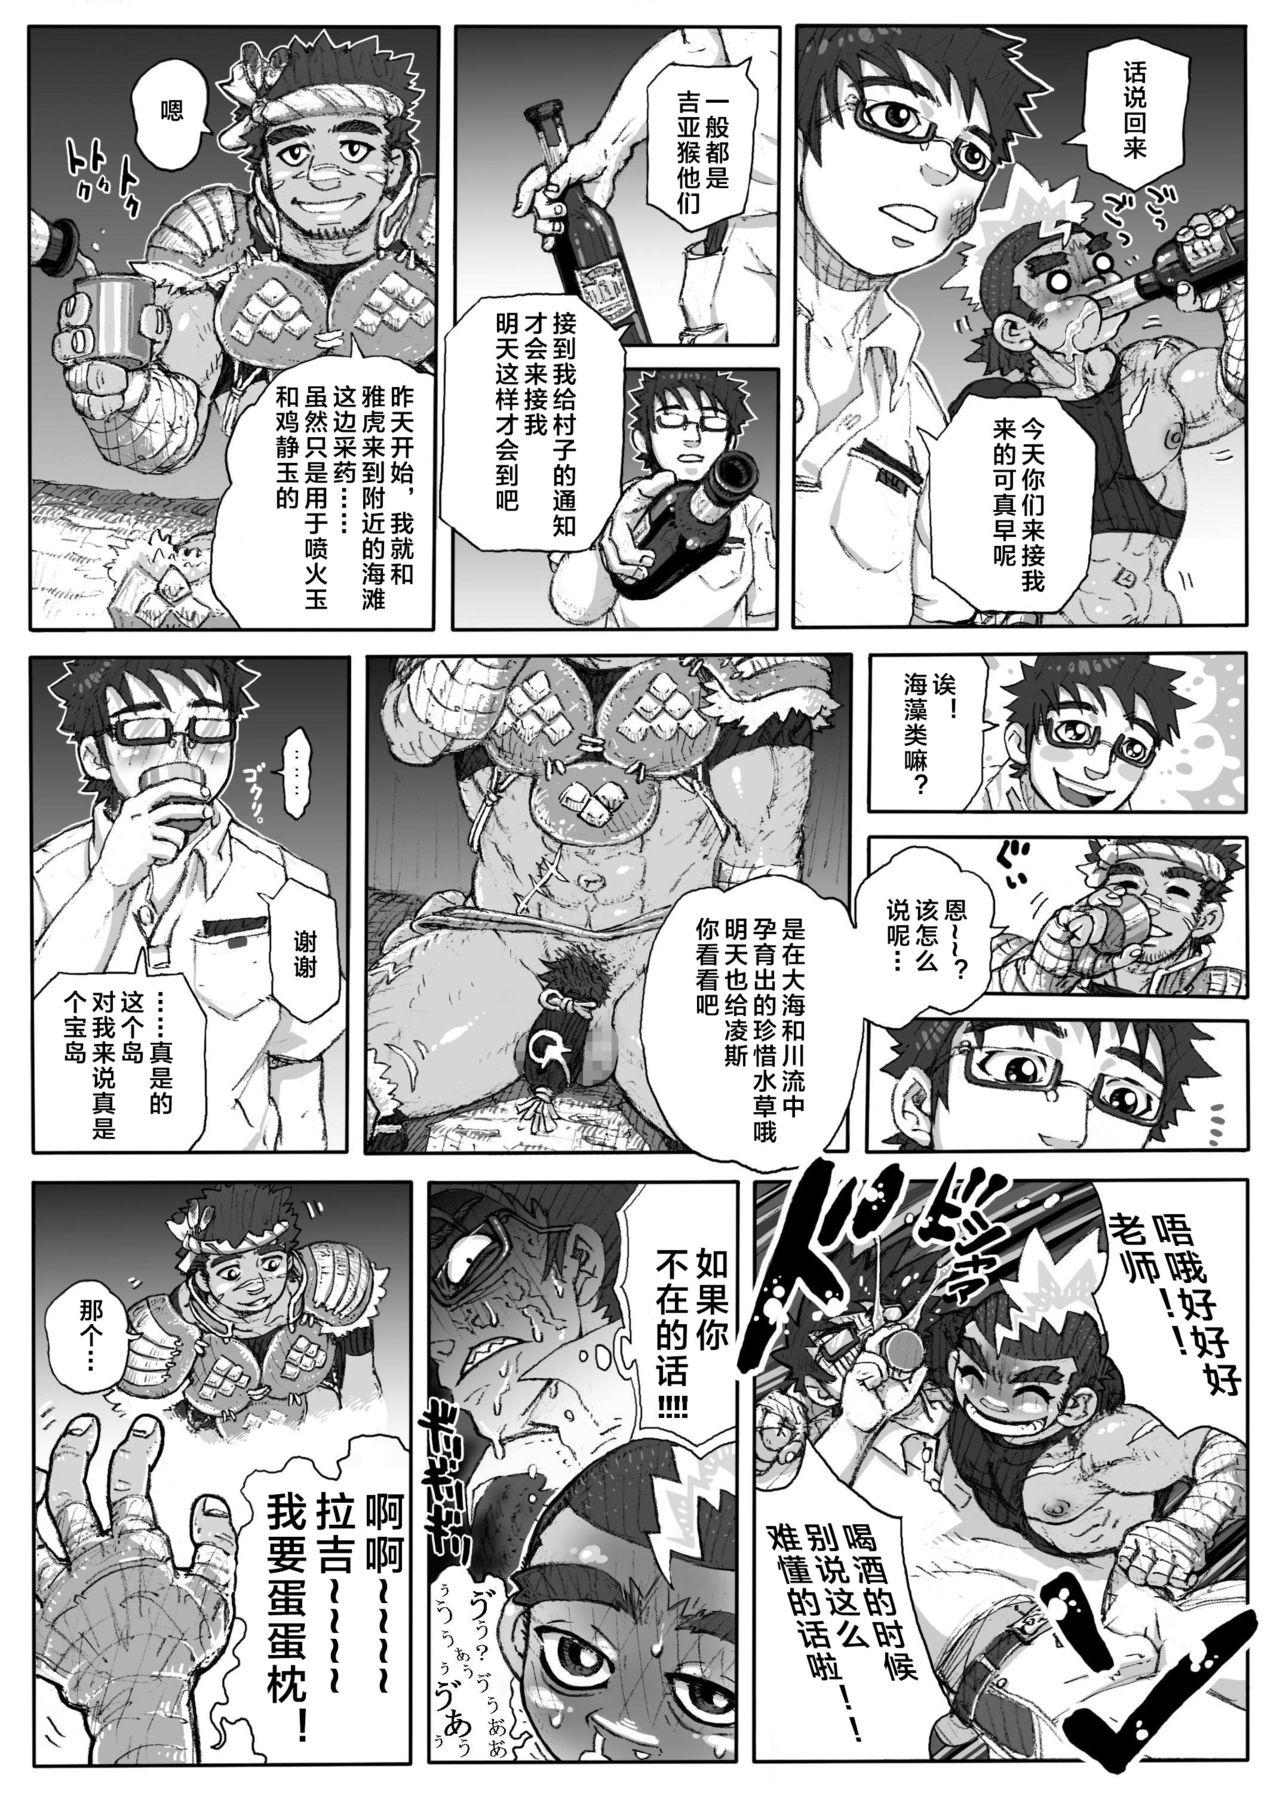 Web Hepoe no Kuni kara 1 - Mizu no Gakusha Sensei, Hi no Buzoku no Saru ni Hazukashimerareru no Maki Defloration - Page 11